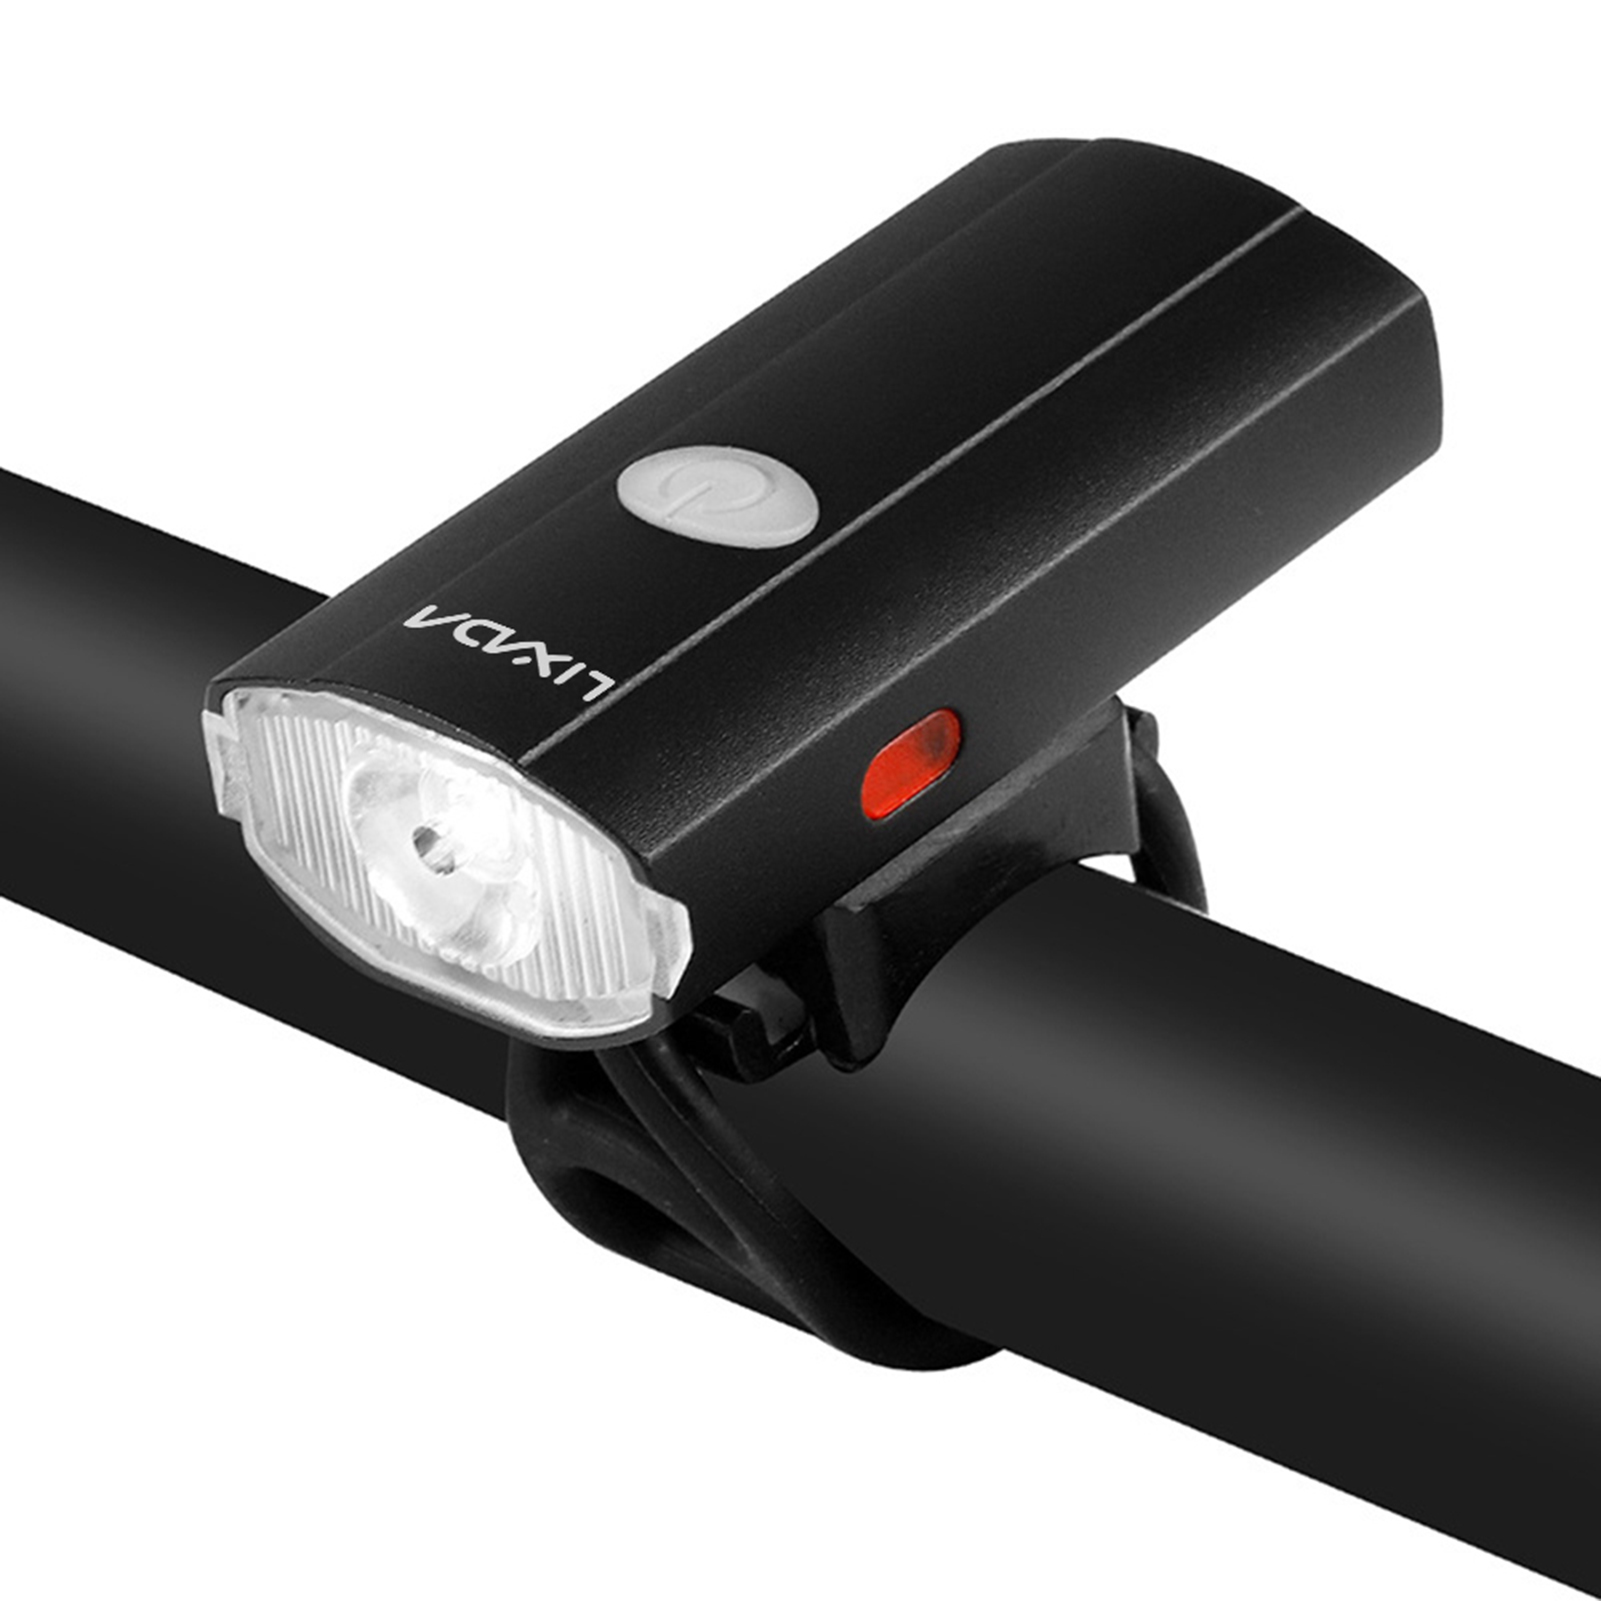 Lixada Lixada 2 IN 1 Bike  Light USB Rechargeable Cycling  Headlight Waterproof  Headlight and Tailli - image 1 of 7